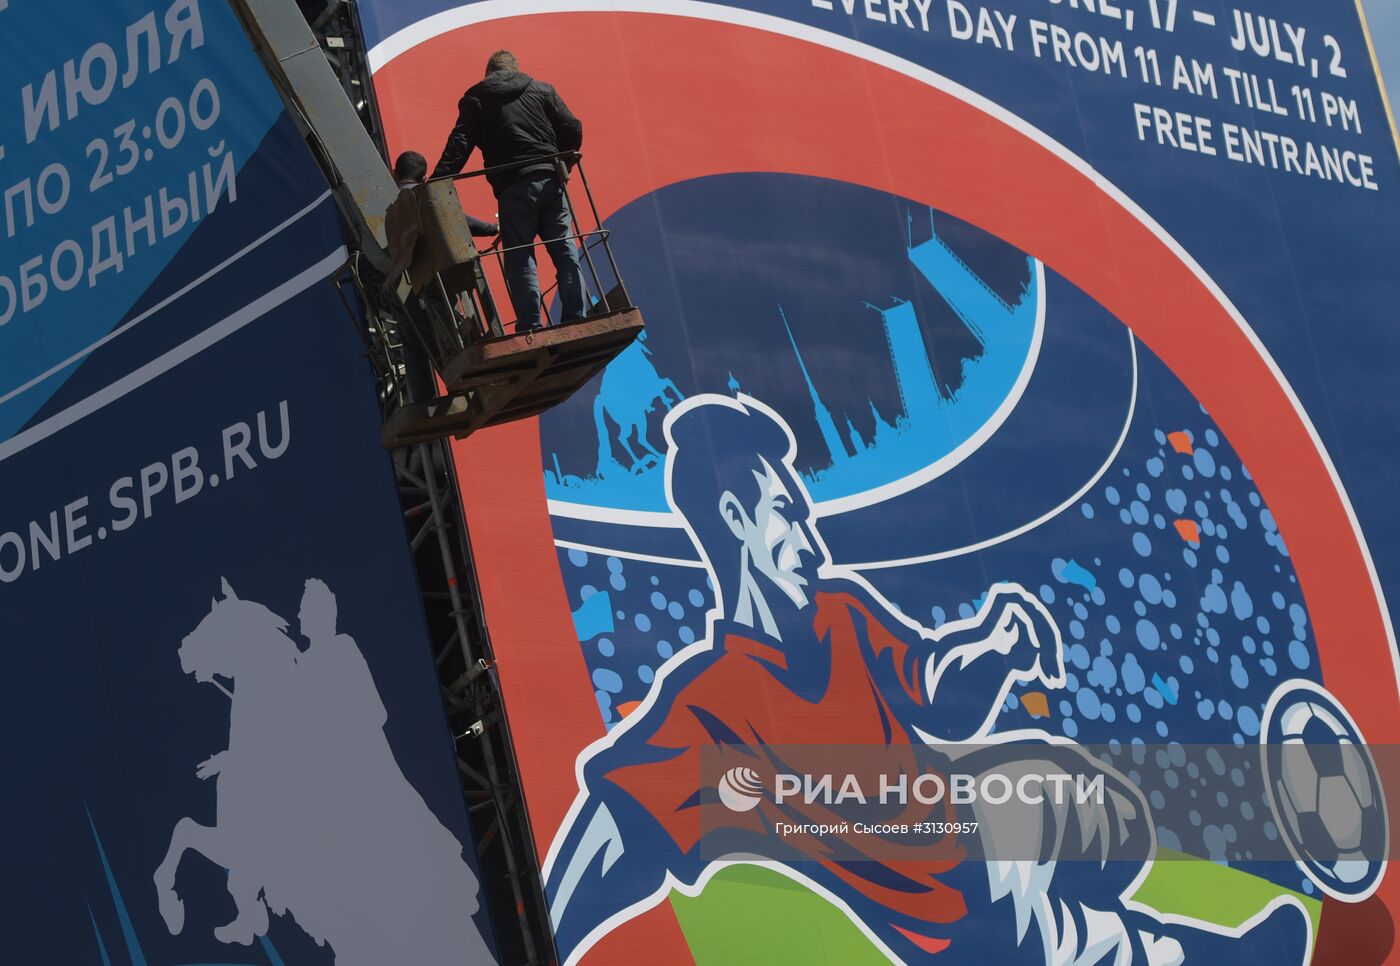 Подготовка к Кубку конфедераций-2017 в Санкт-Петербурге